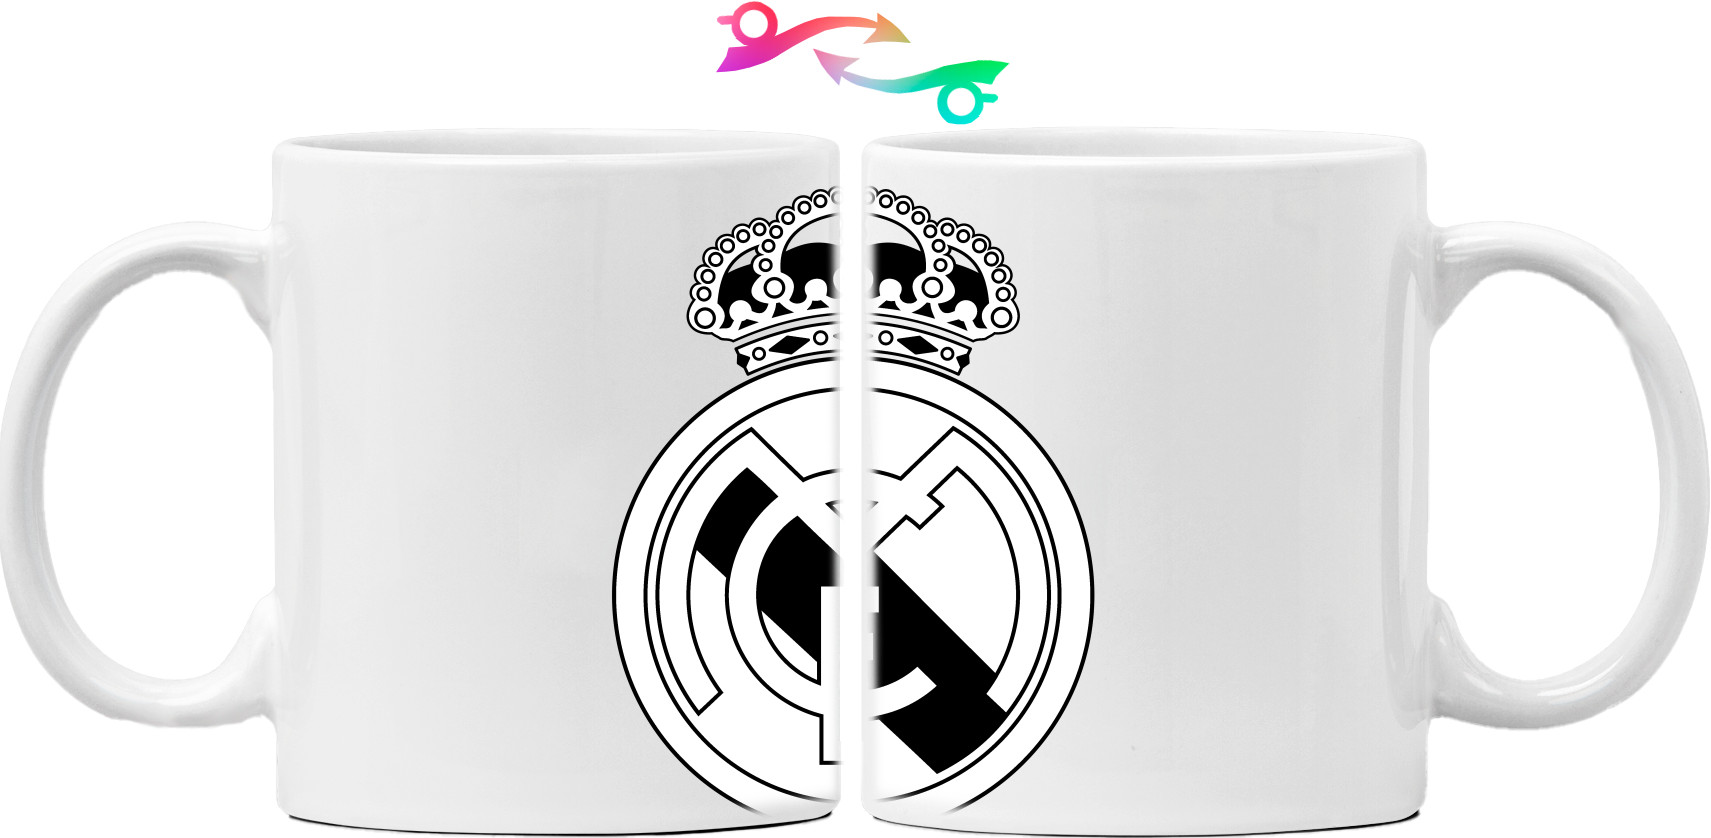 Real Madrid (2)